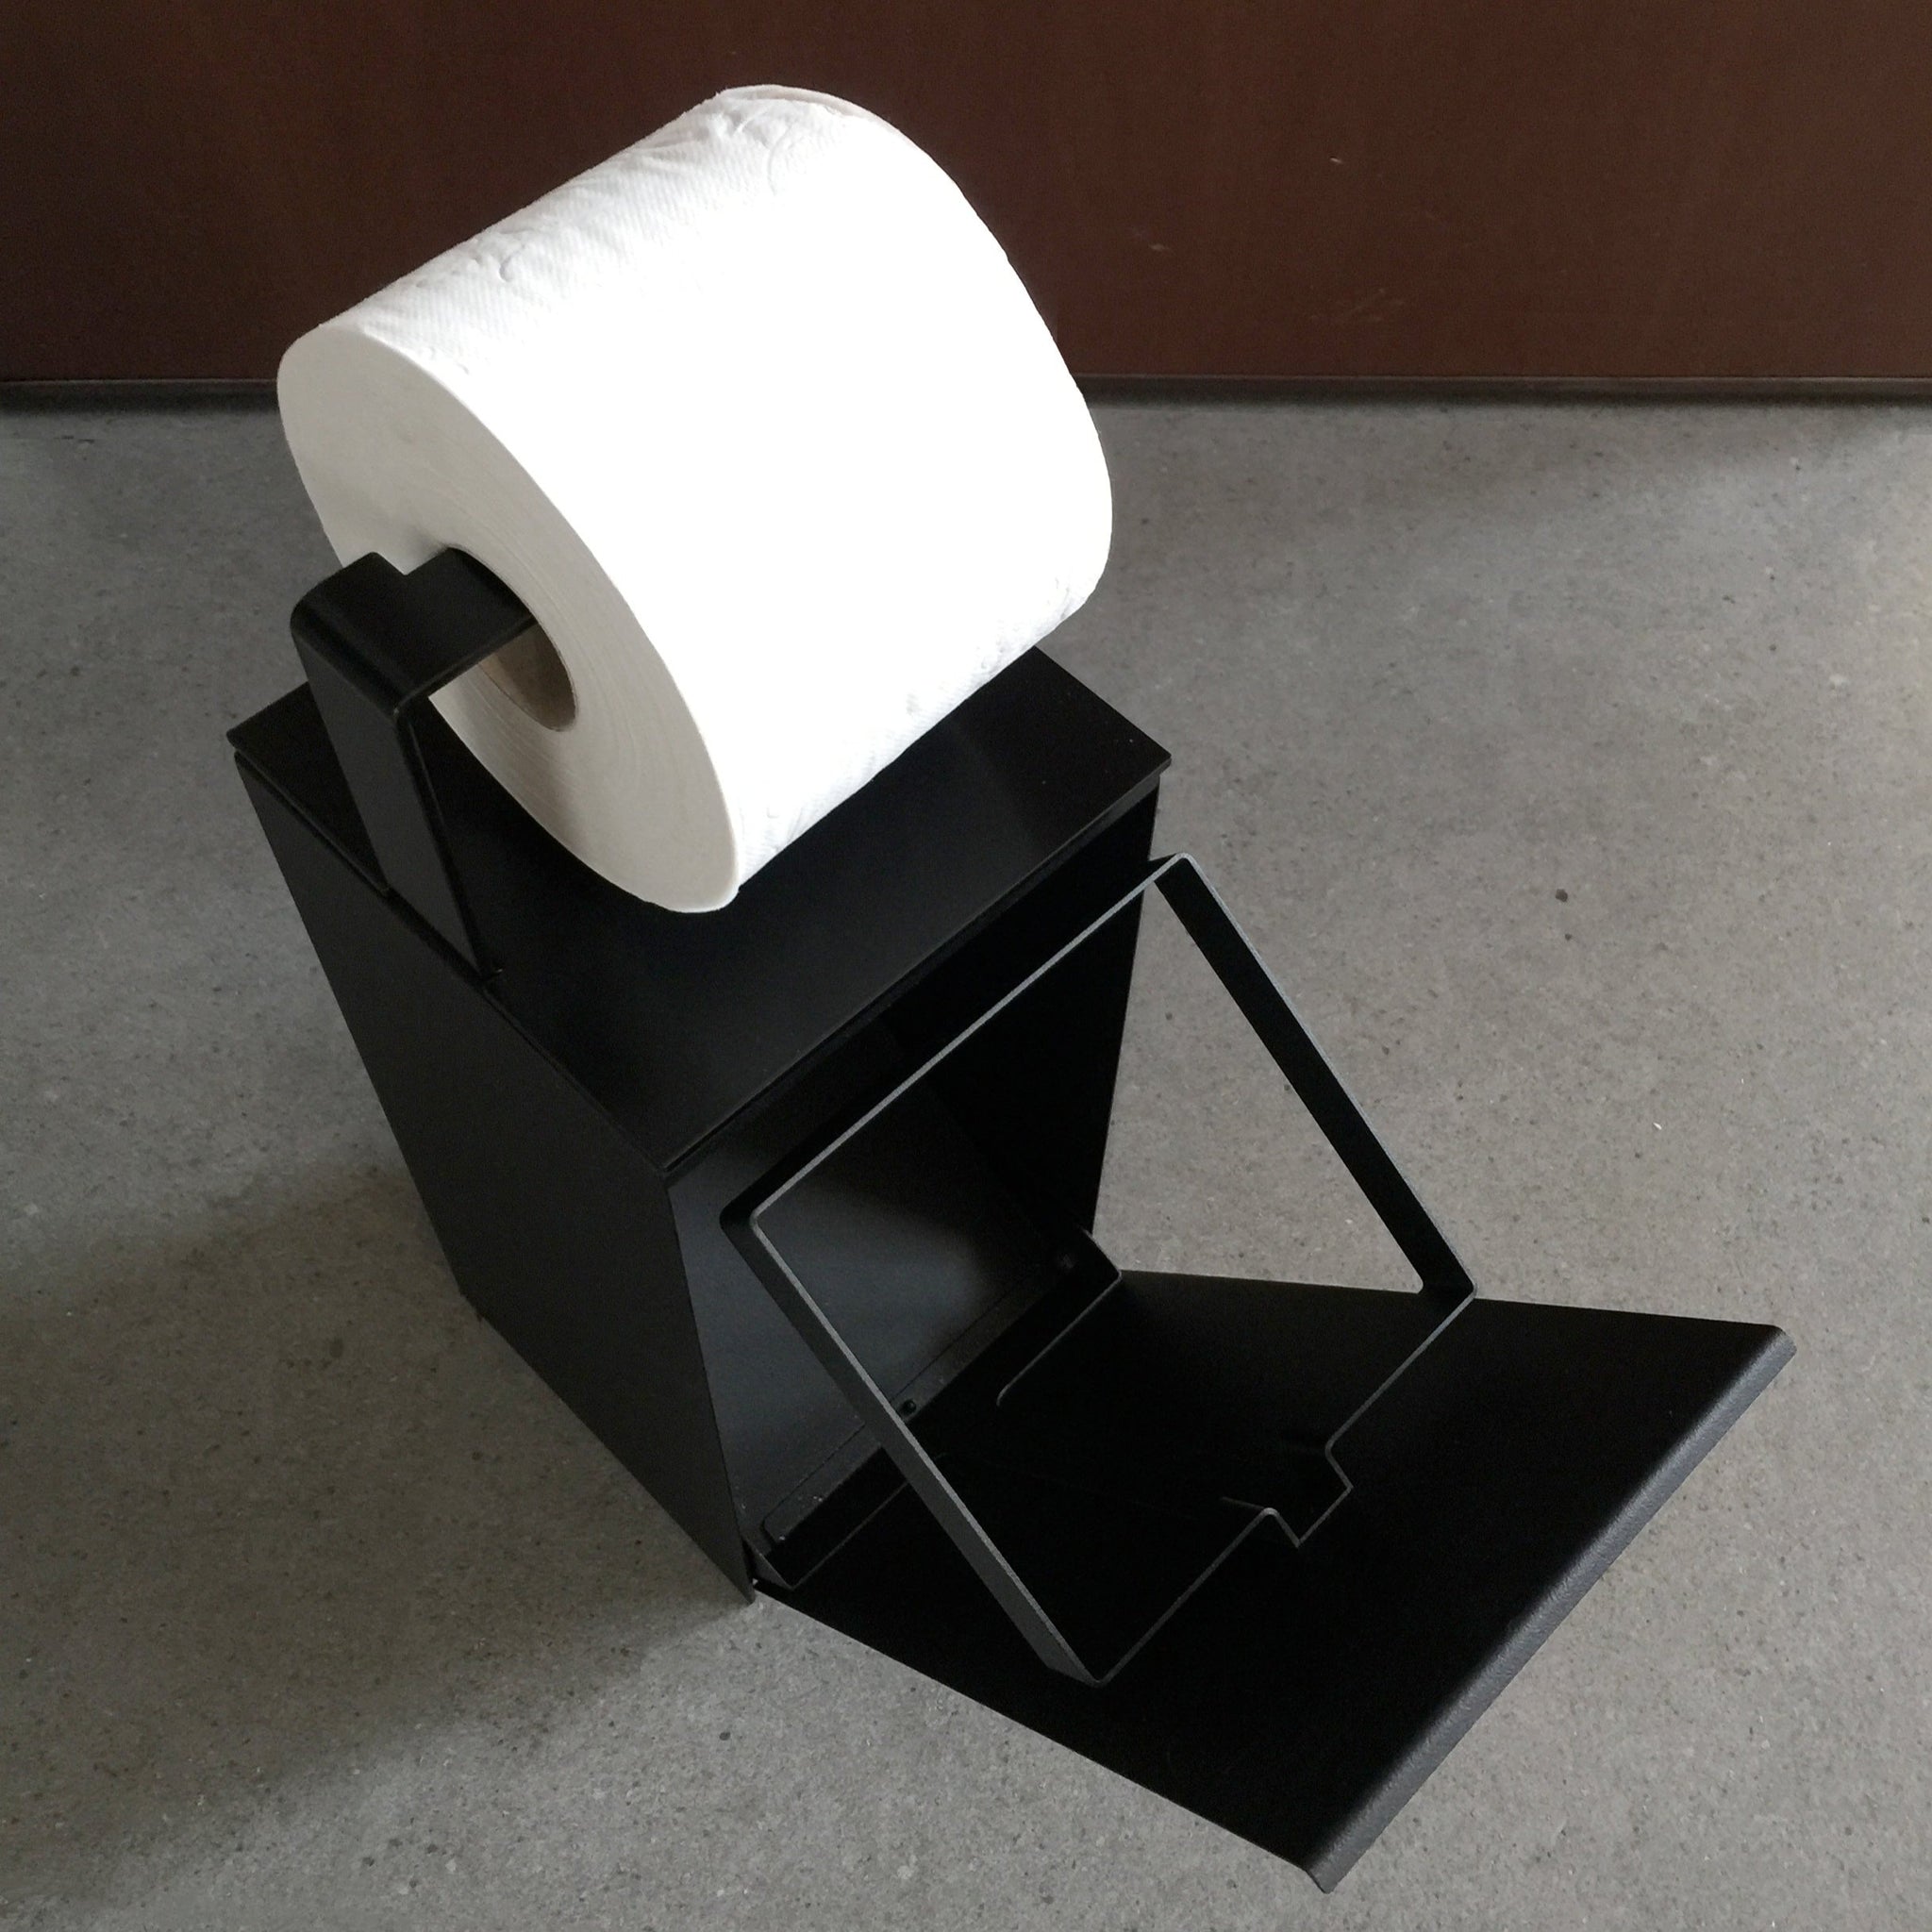 Bathroom bin + Roll holder accessory | Franz - mg12